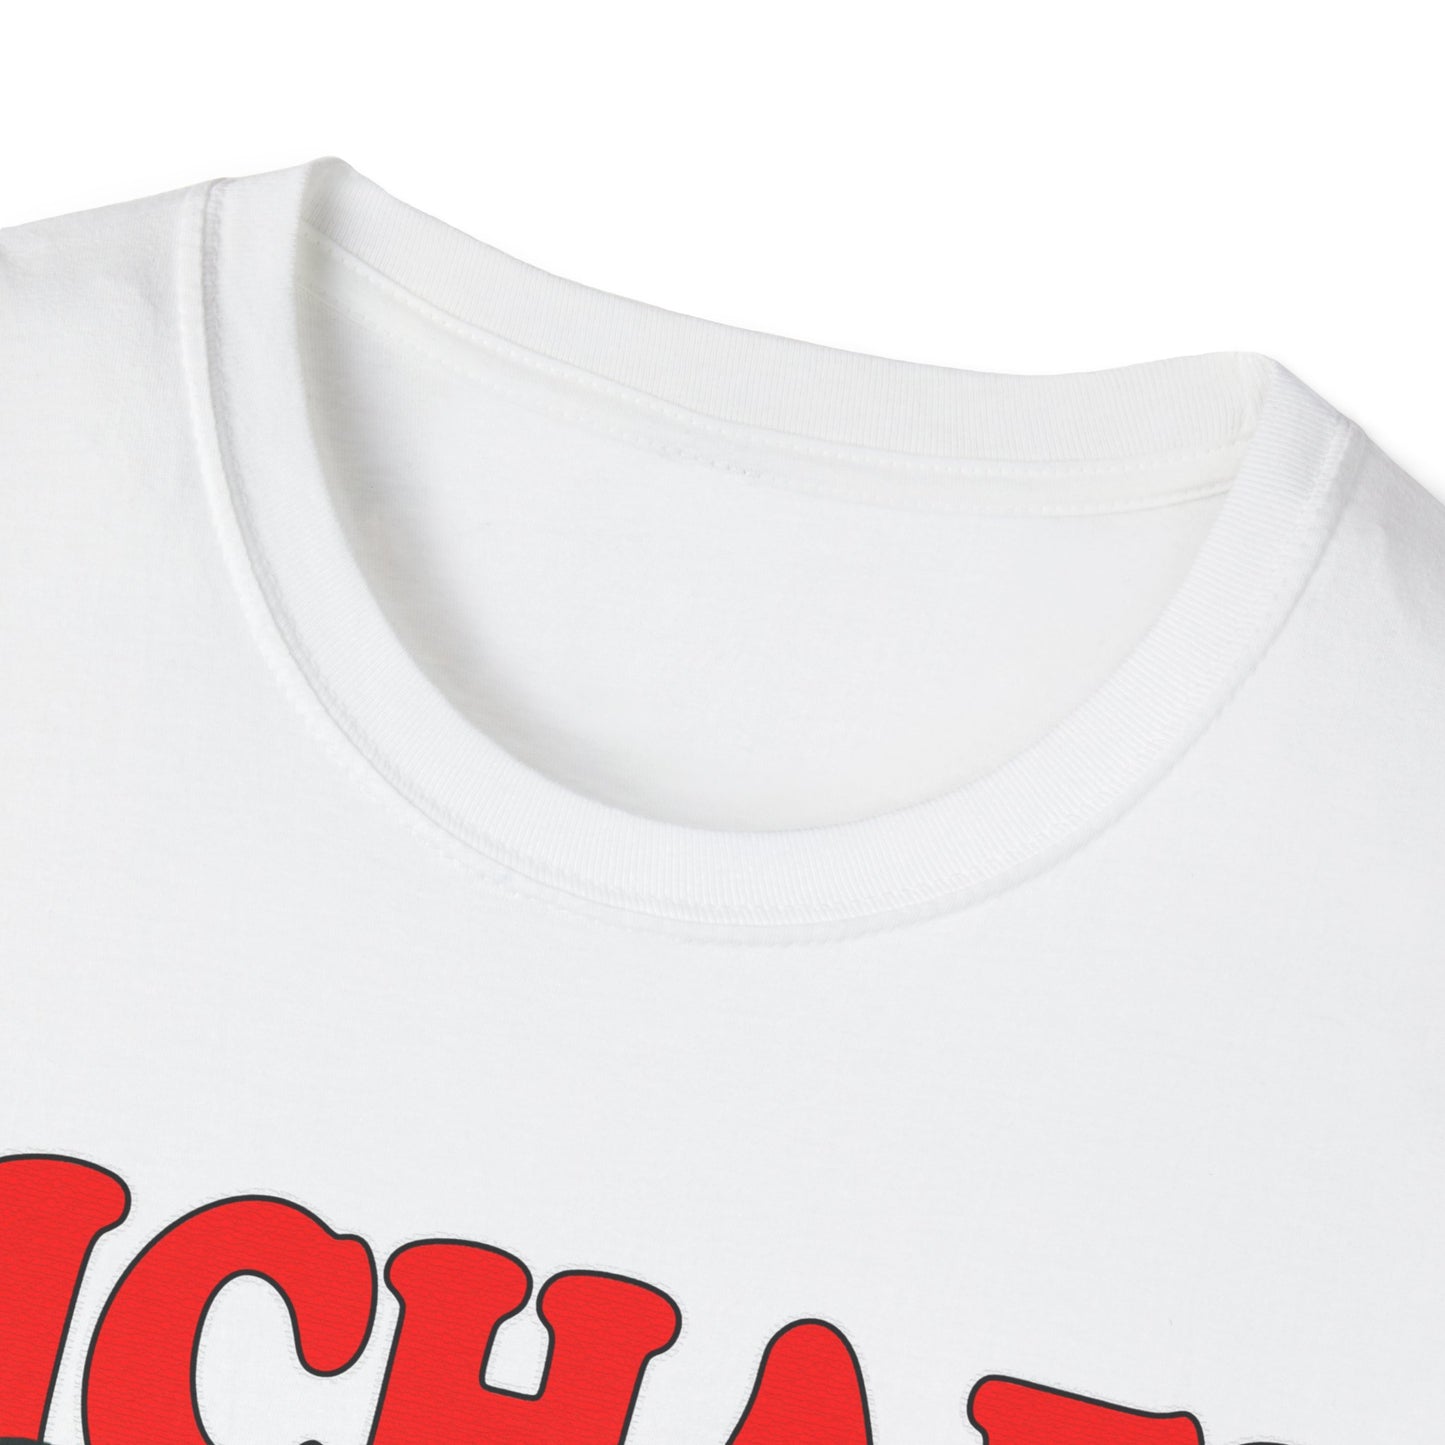 Michael Jordan Shirt, Michael Jordan PNG, Michael Jordan Vintage T-shirt, Vintage Rap T shirt, Michael Jordan Vintage Inspired 90's T-Shirt